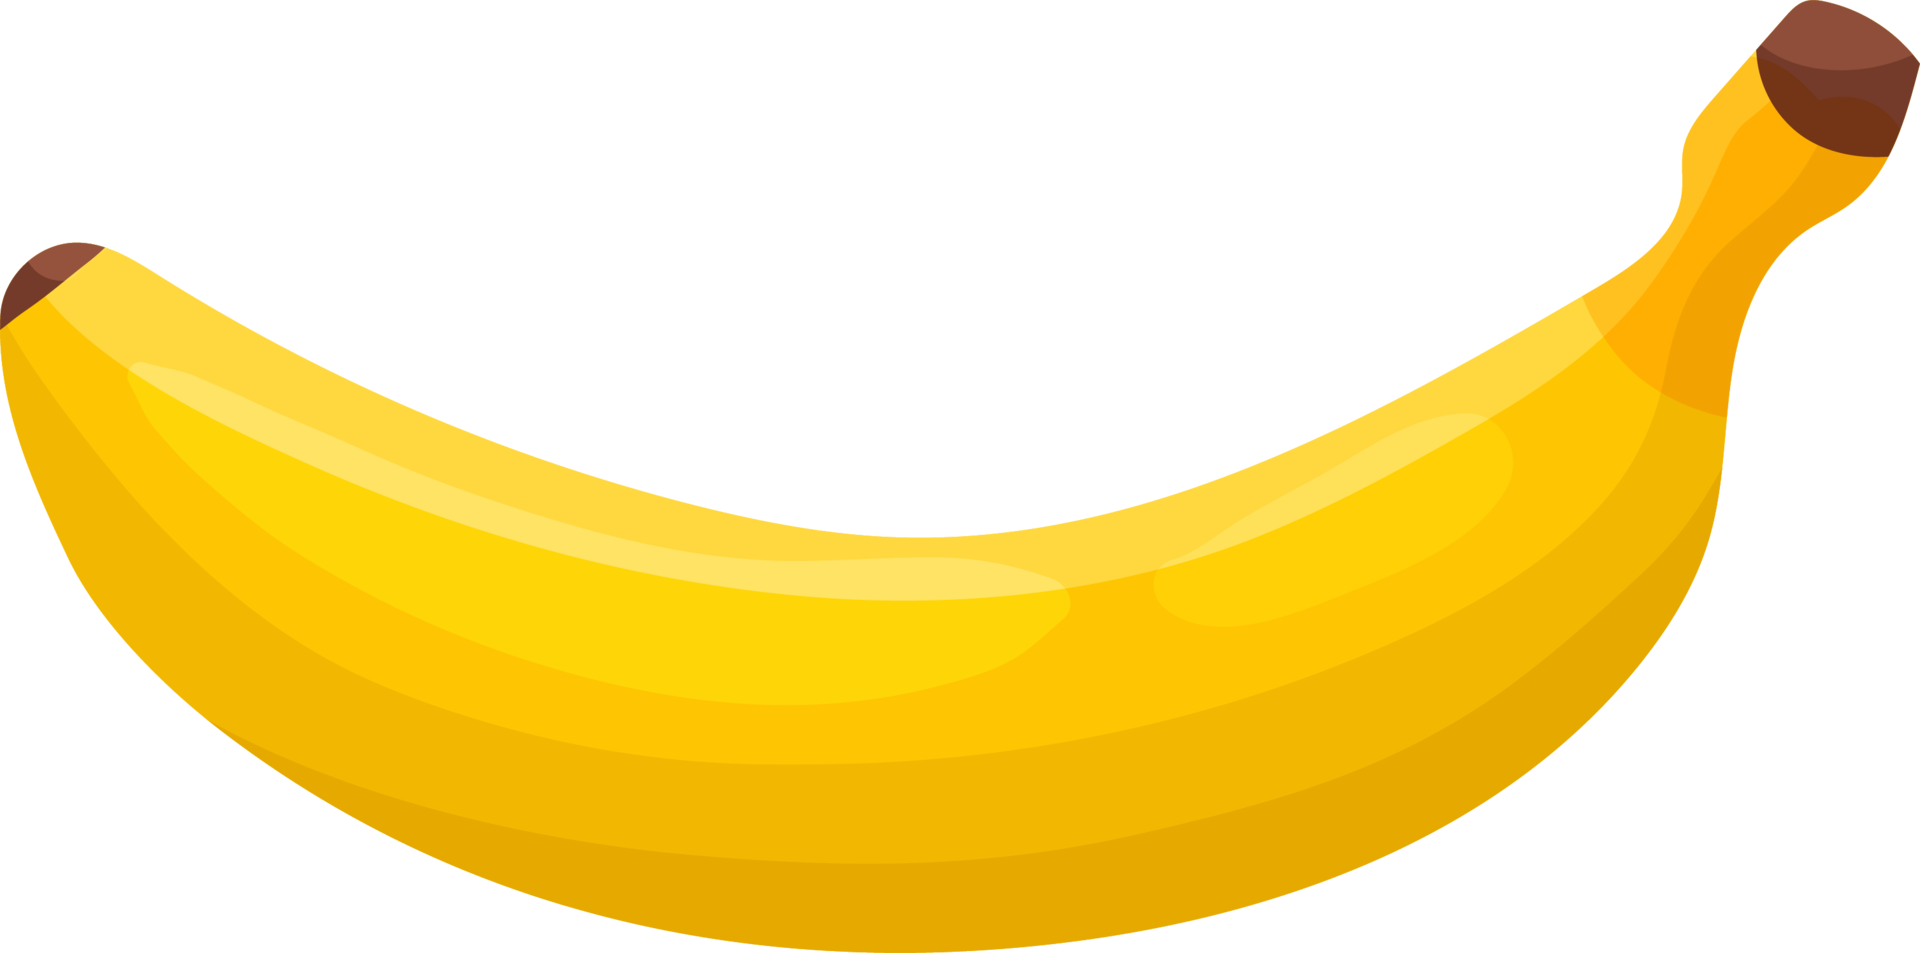 Banane ist eine gelbe Frucht. png